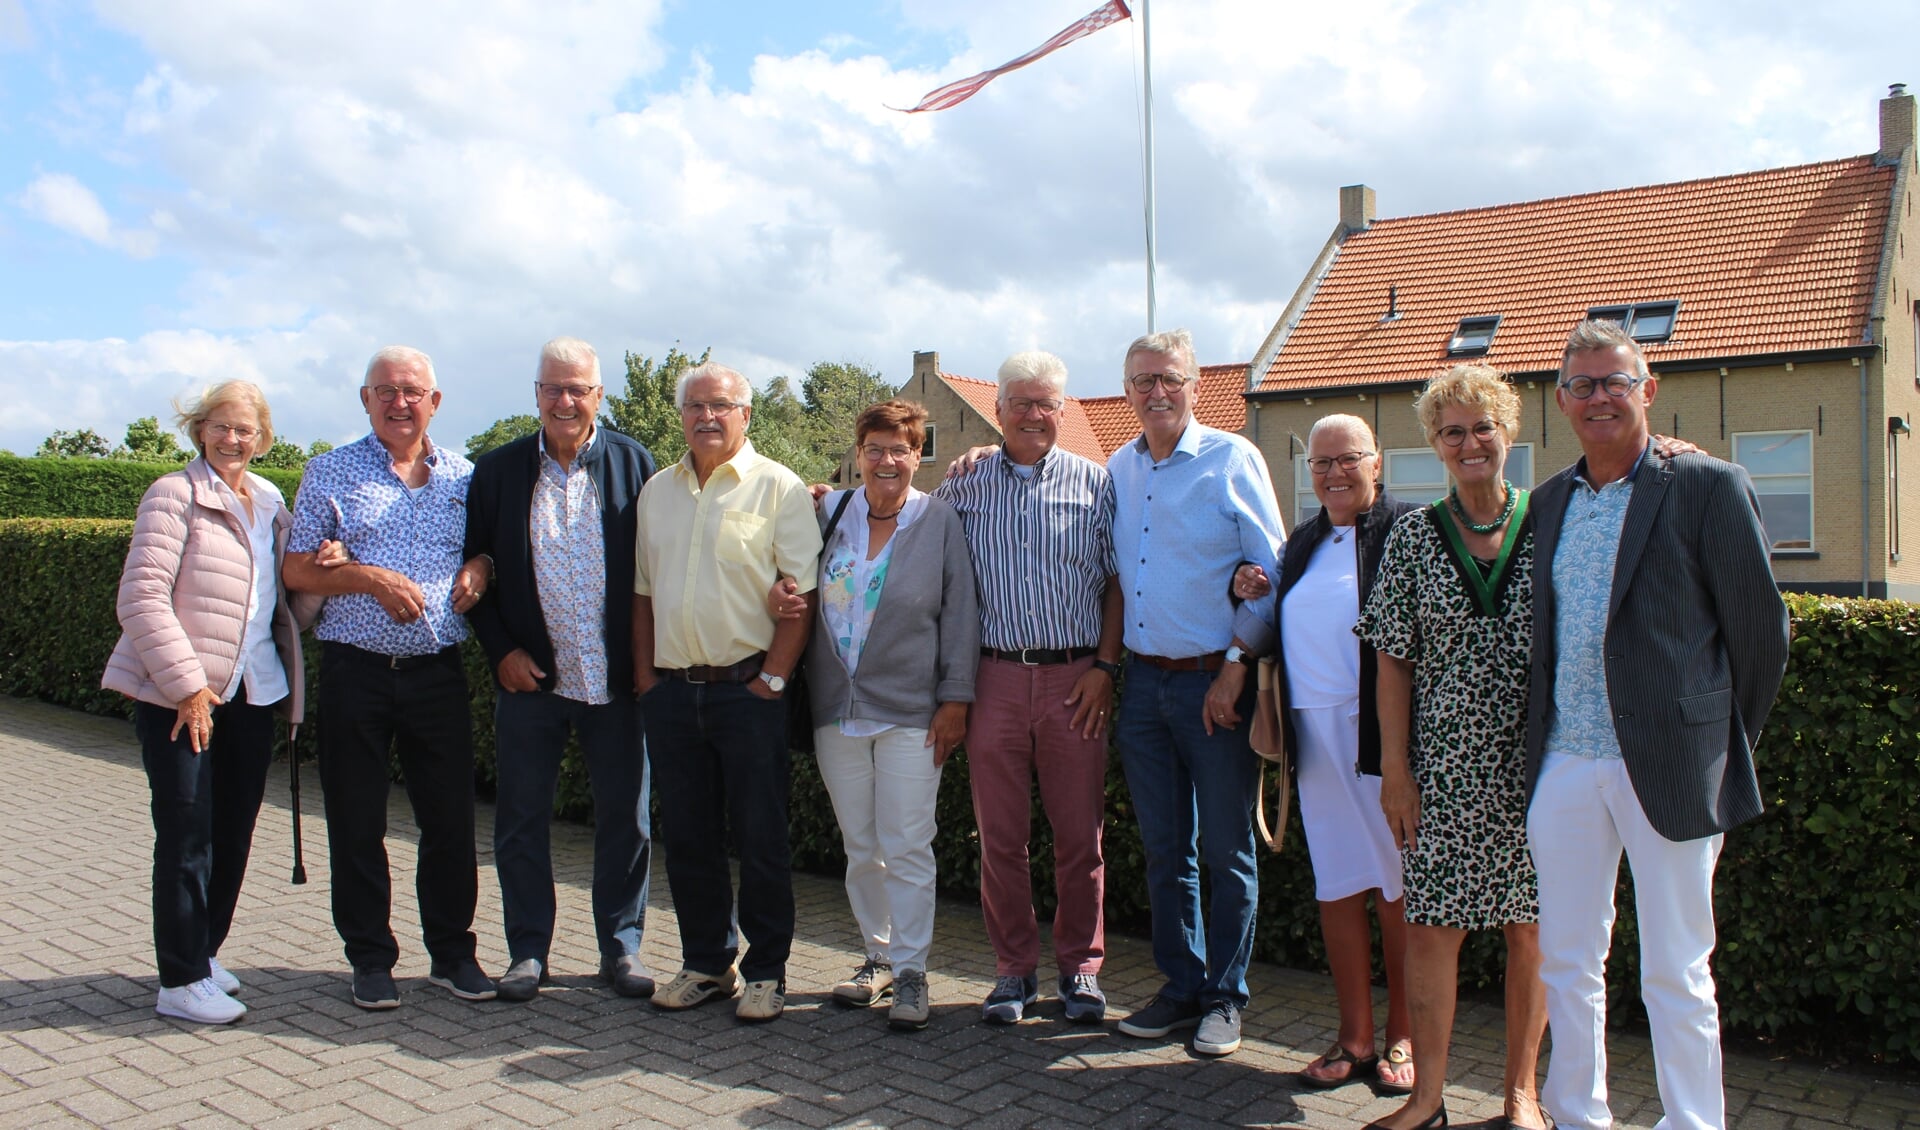 10 van de 11 kinderen uit het gezin Van Overveld uit Steenbergen vieren samen 790 jaar verjaardag.